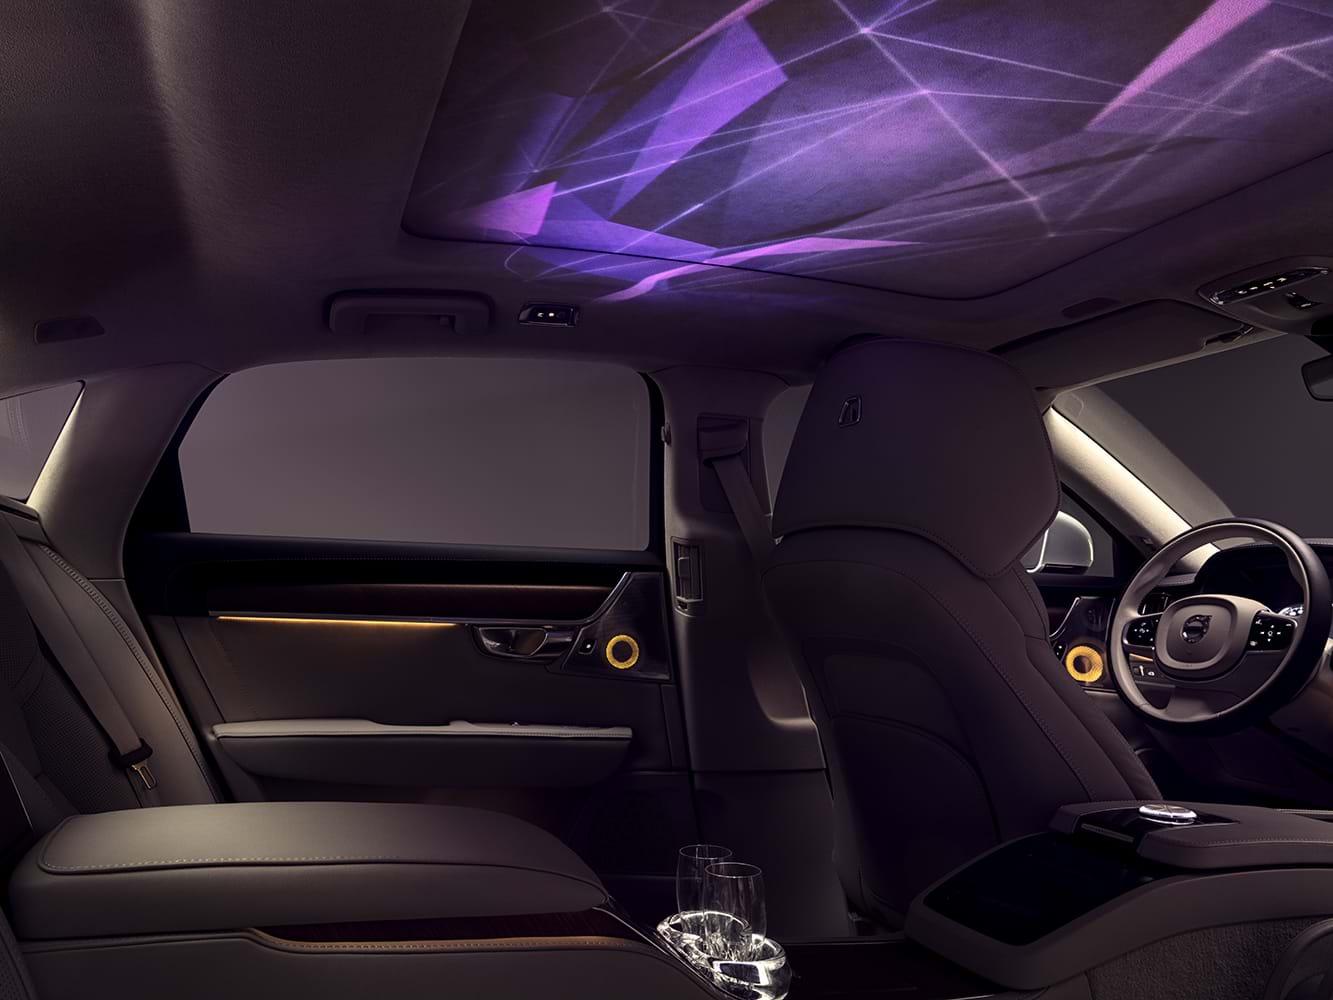 Interiér vozu Volvo s náladovou světelnou prezentací promítanou na strop kabiny